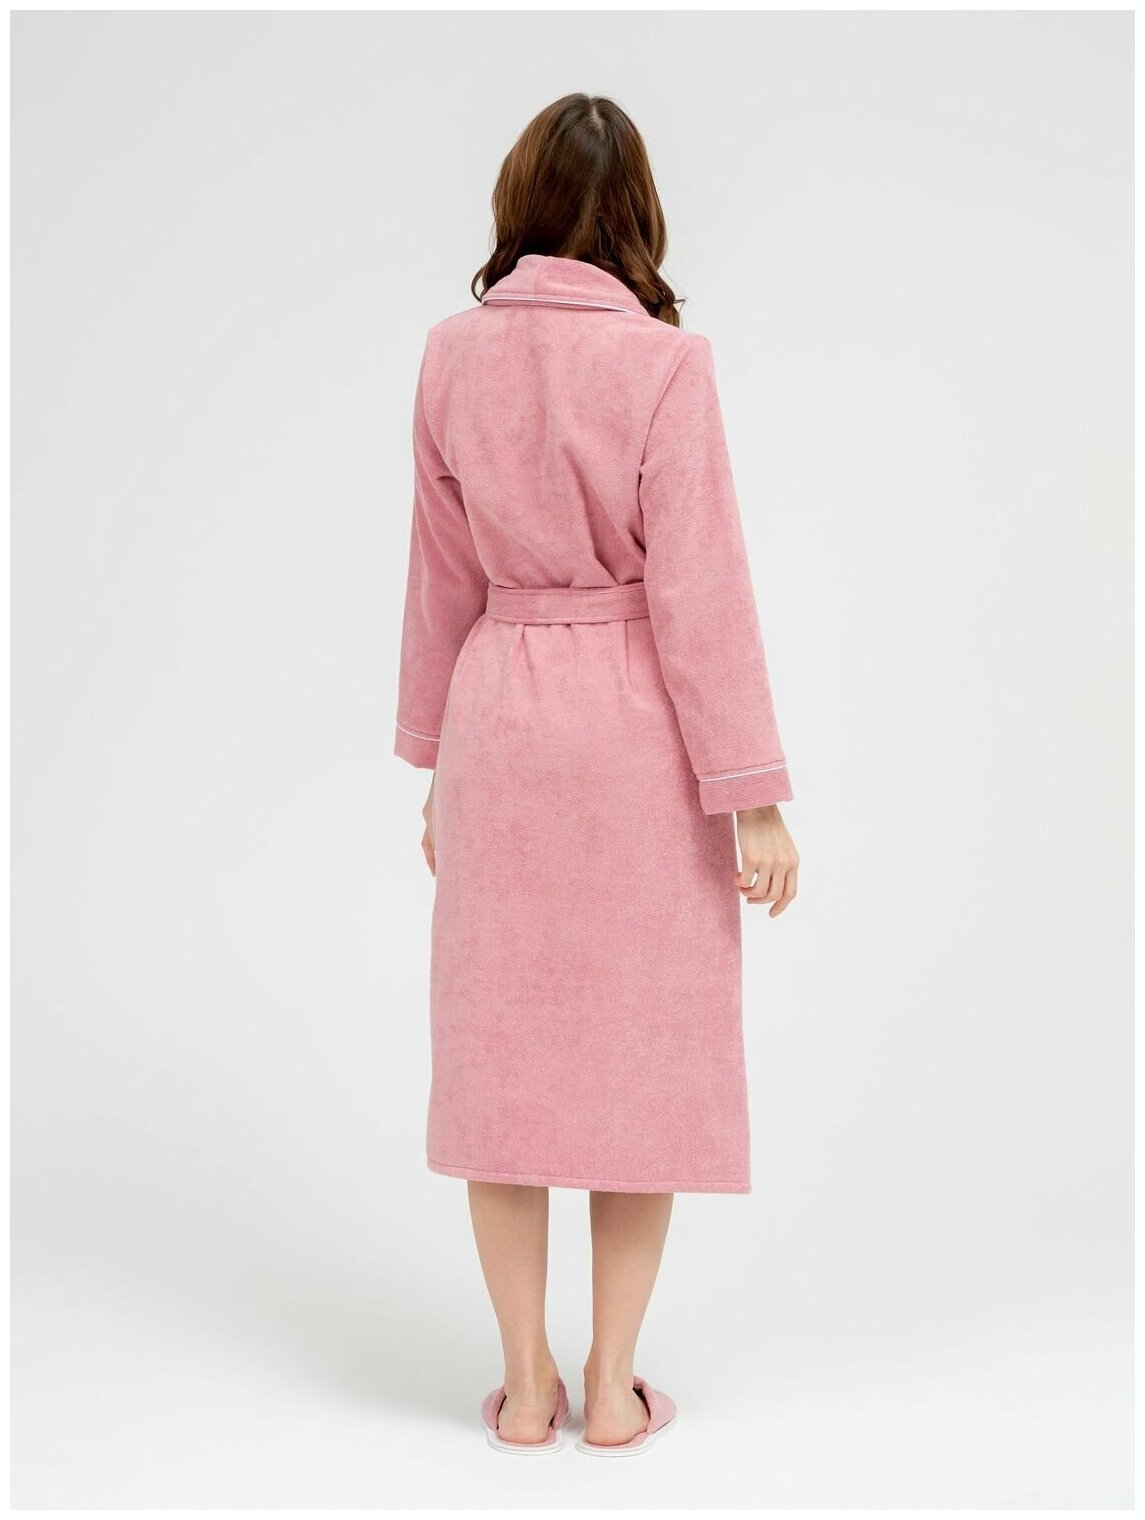 Женский махровый халат с кантом Росхалат, пудрово-розовый. Размер 50-52 - фотография № 5